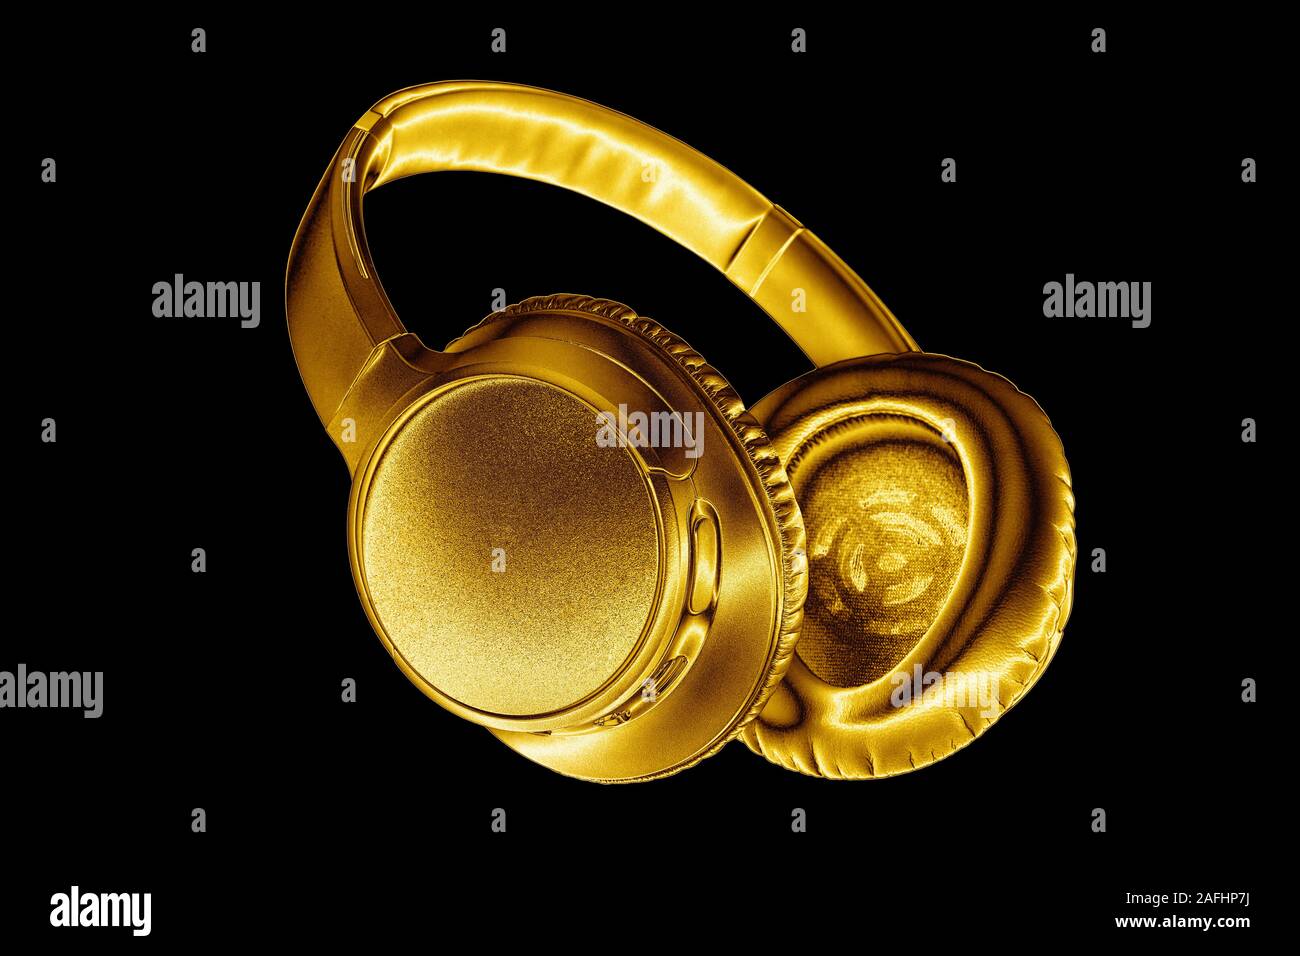 Casque sans fil brillant doré sur fond noir isolé close up, luxury gold métal casque Bluetooth, haut de gamme moderne wi-fi écouteurs jaune Banque D'Images